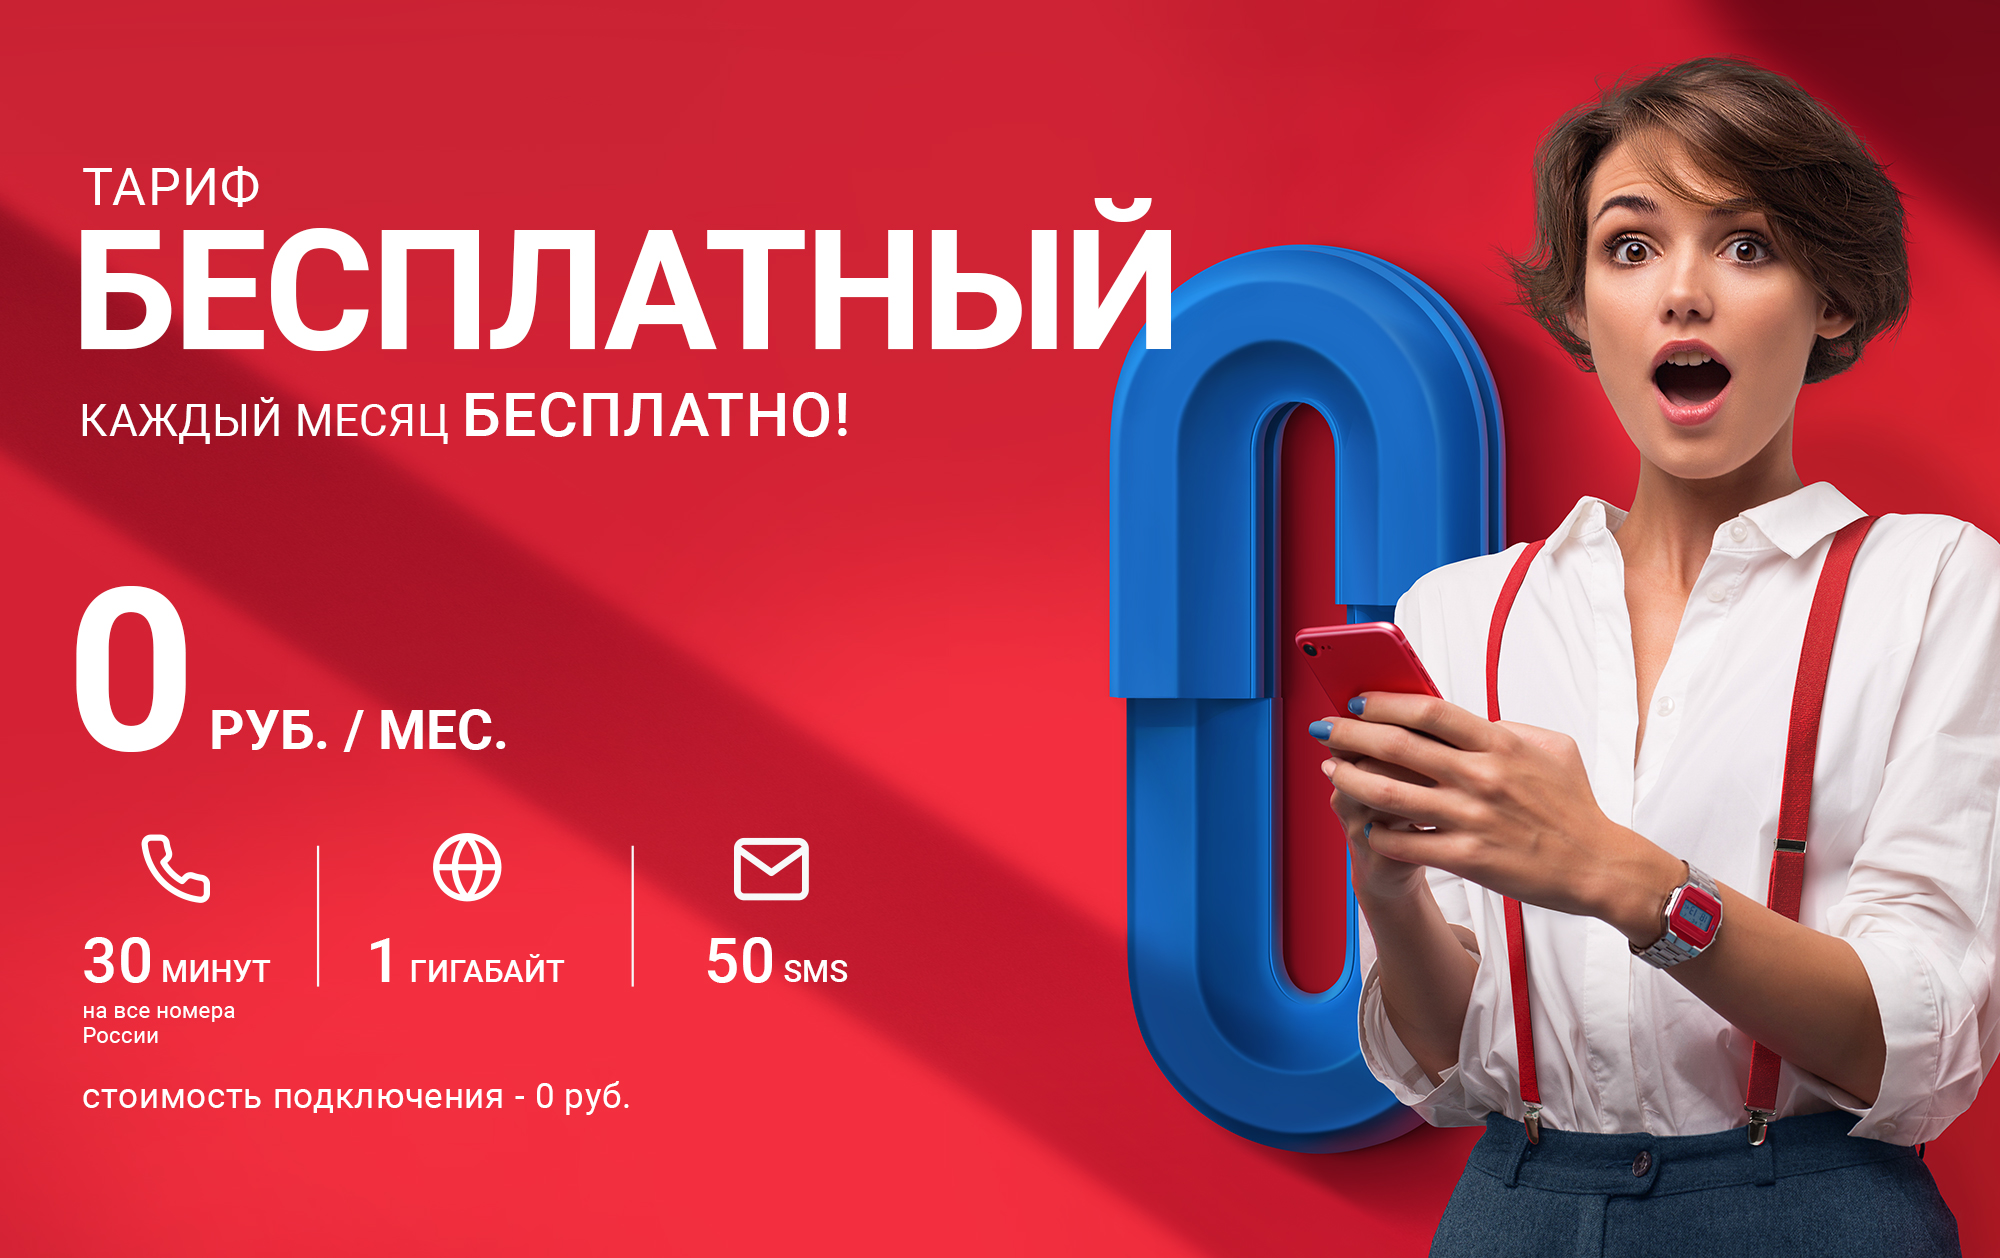 В России появилась абсолютно бесплатная мобильная связь для каждого apple,бесплатный тариф,гаджеты,Интернет,мобильные телефоны,Мобильный оператор,мобильный тариф,советы,социальные сети,телефоны,техника,технологии